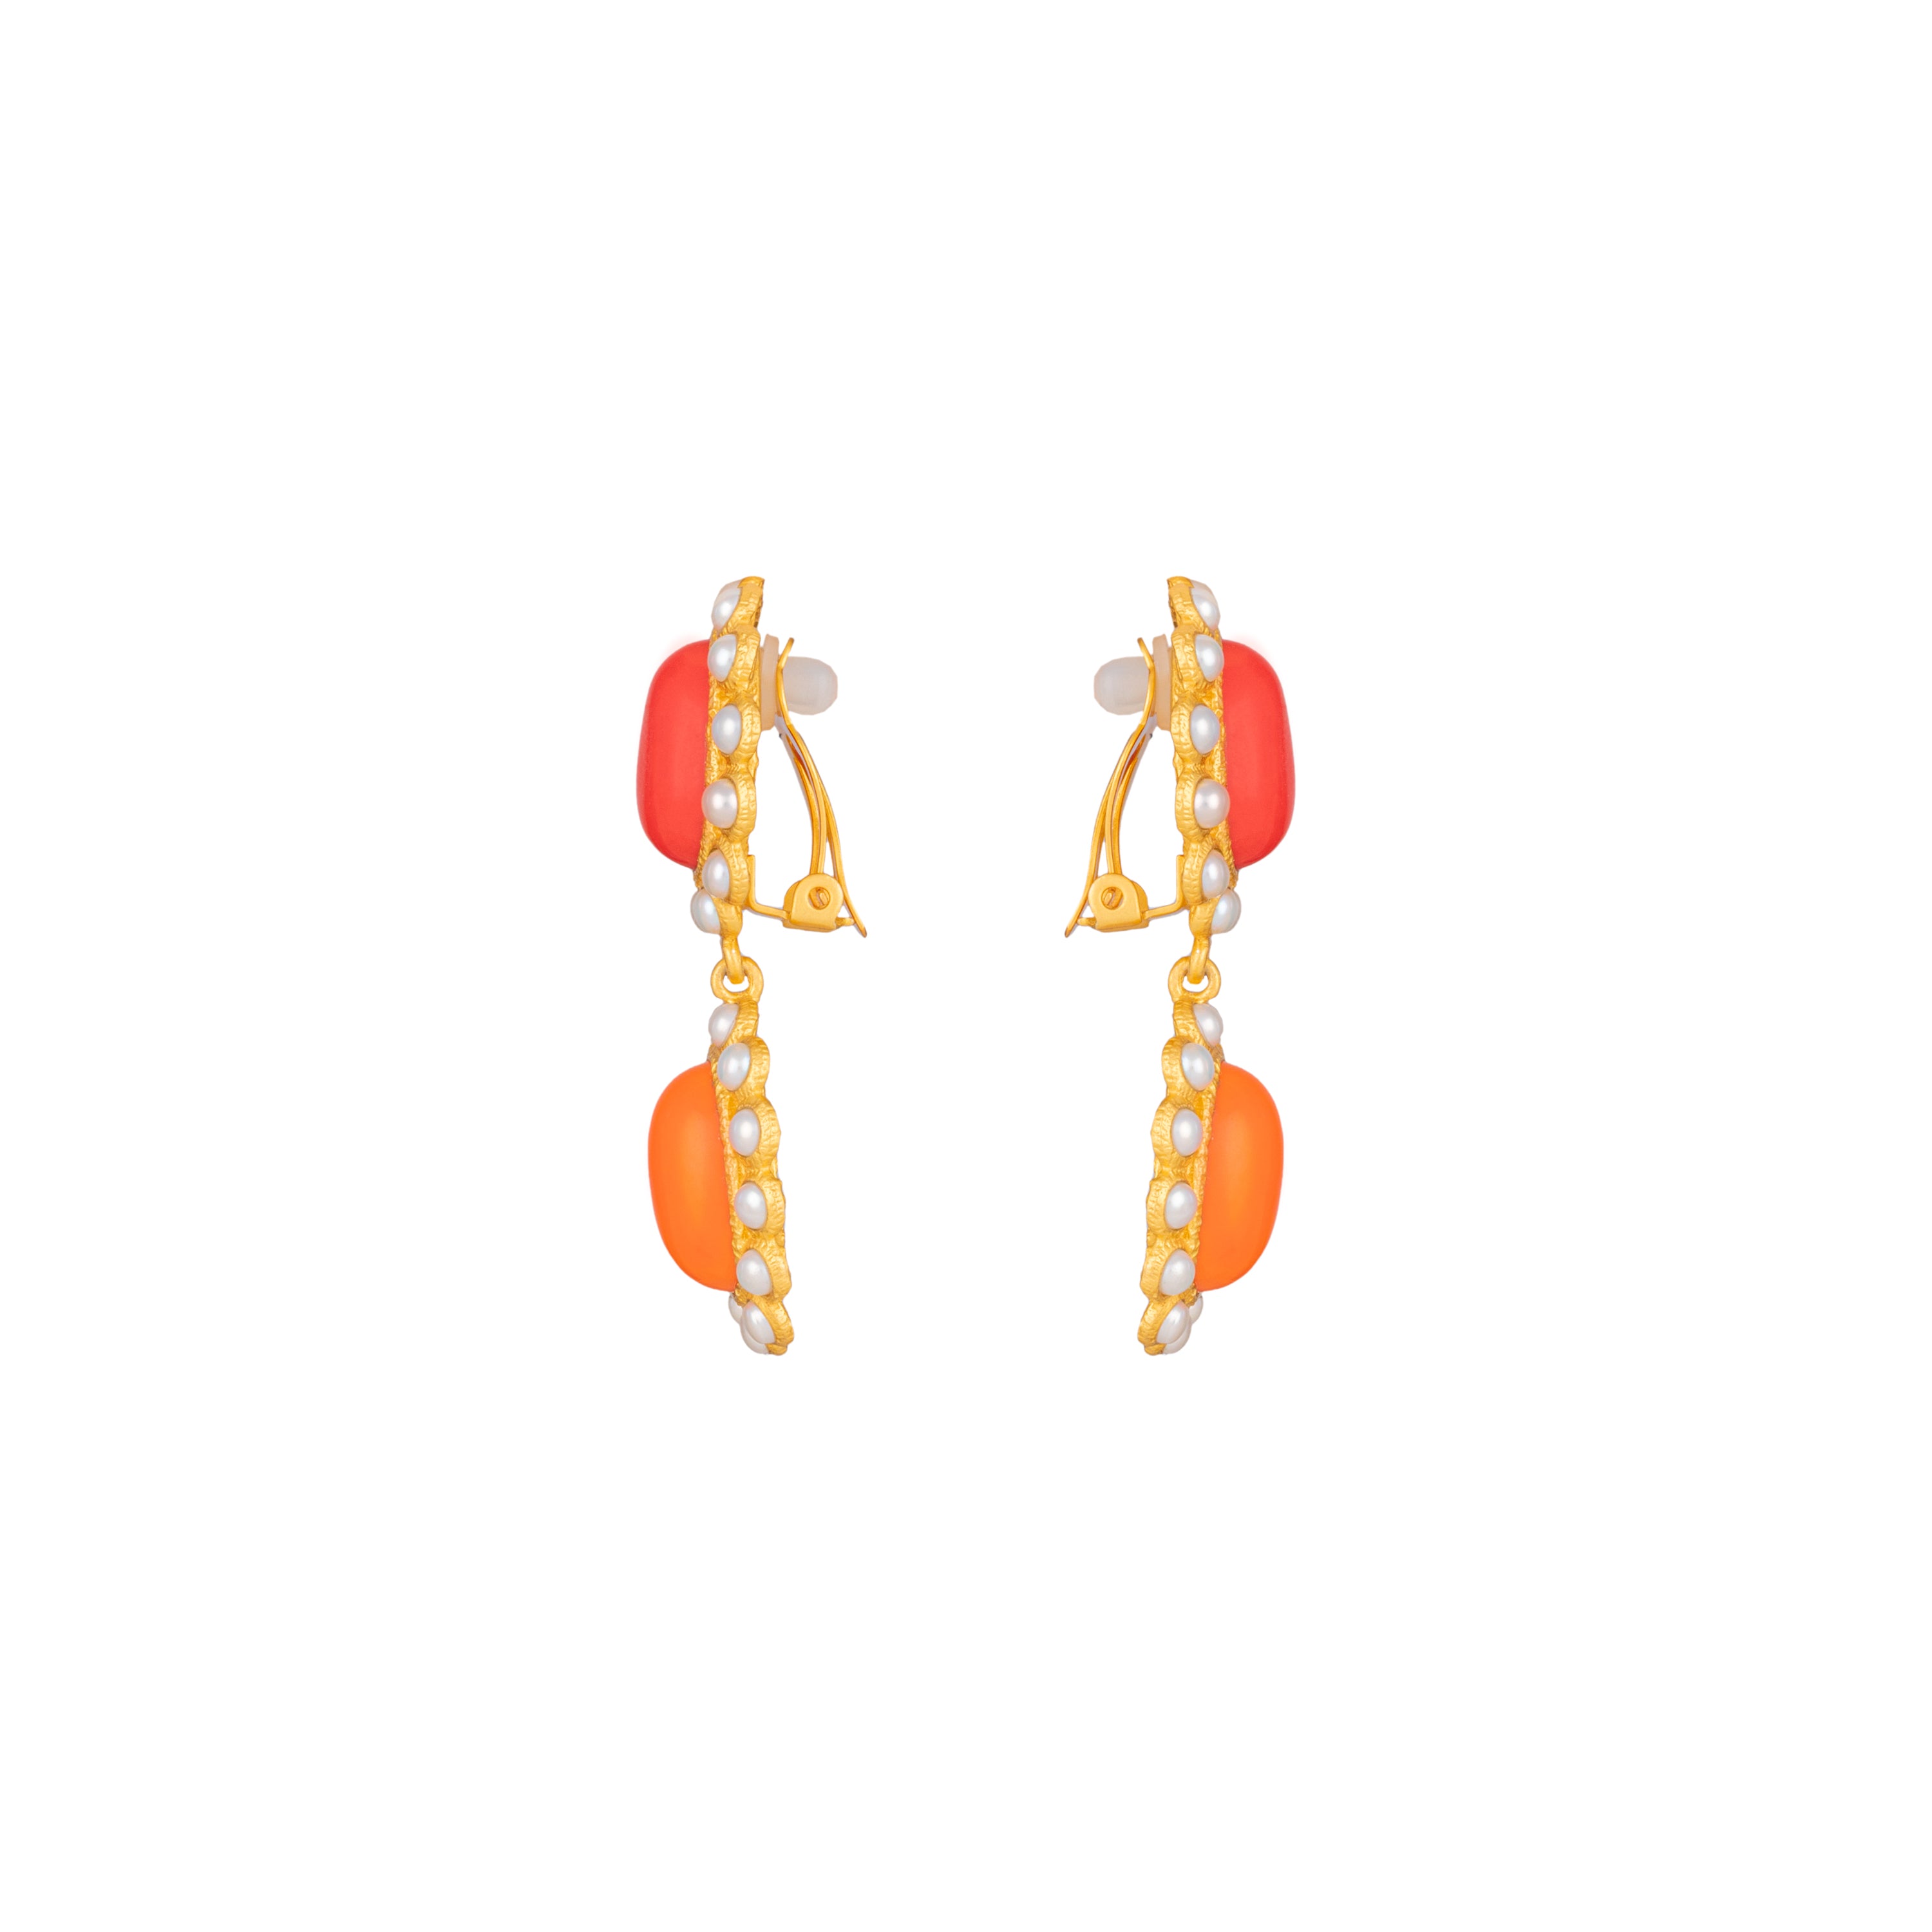 Ada Earrings Red & Orange Coral